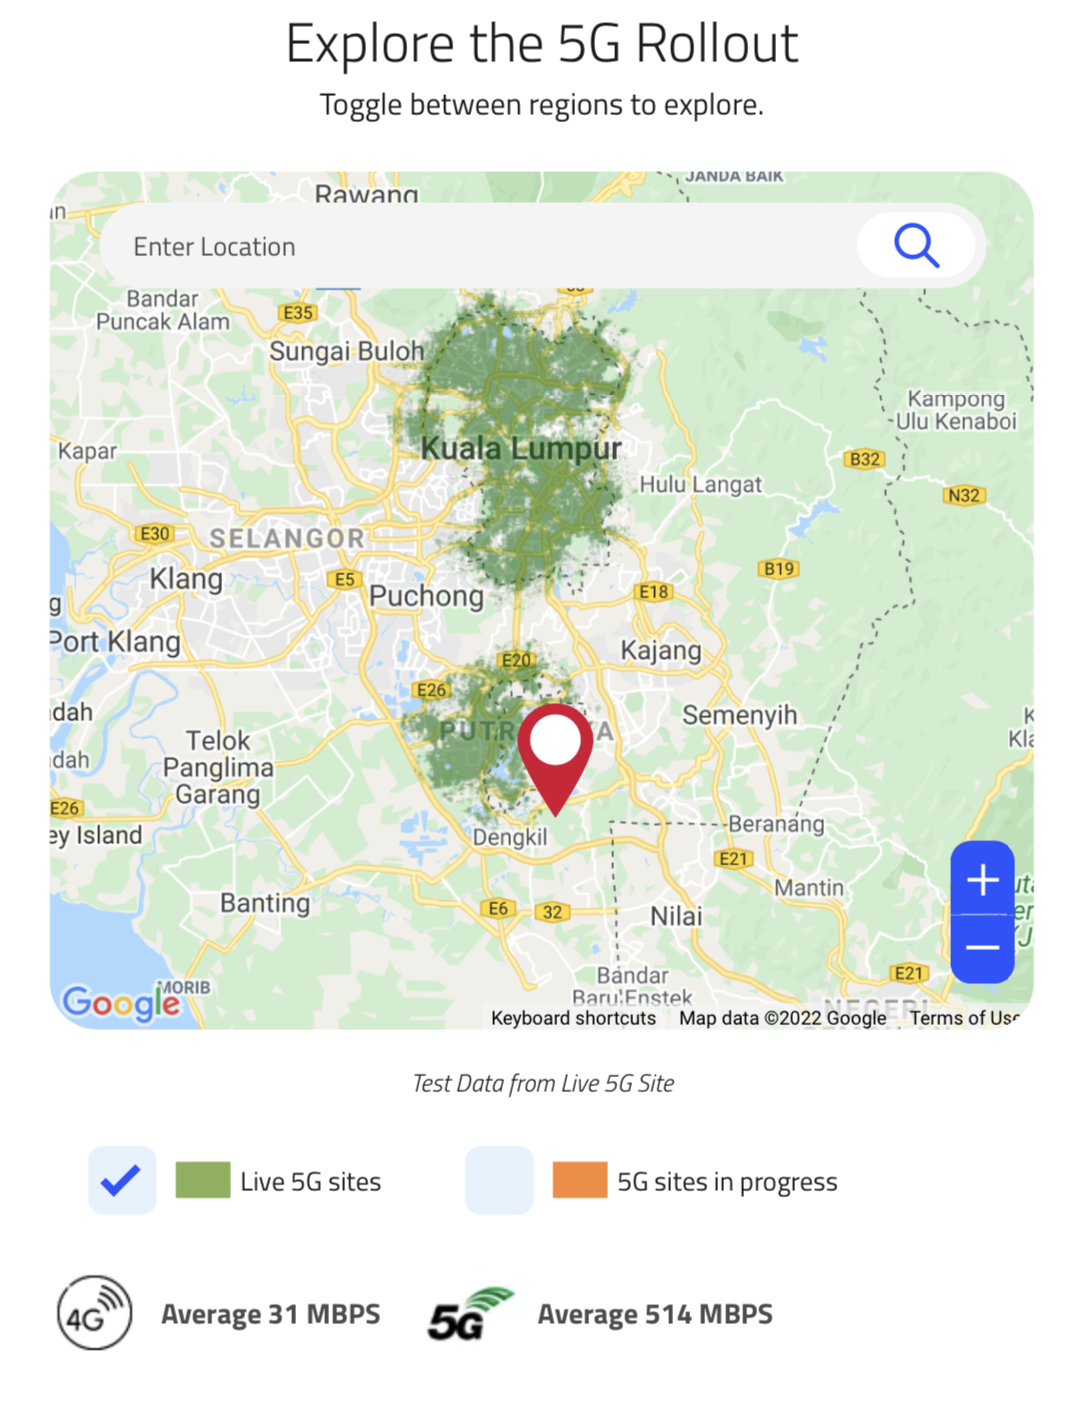 Rangkaian 5G kini di Malaysia - Lihat Liputan 5G di Kawasan Anda 6